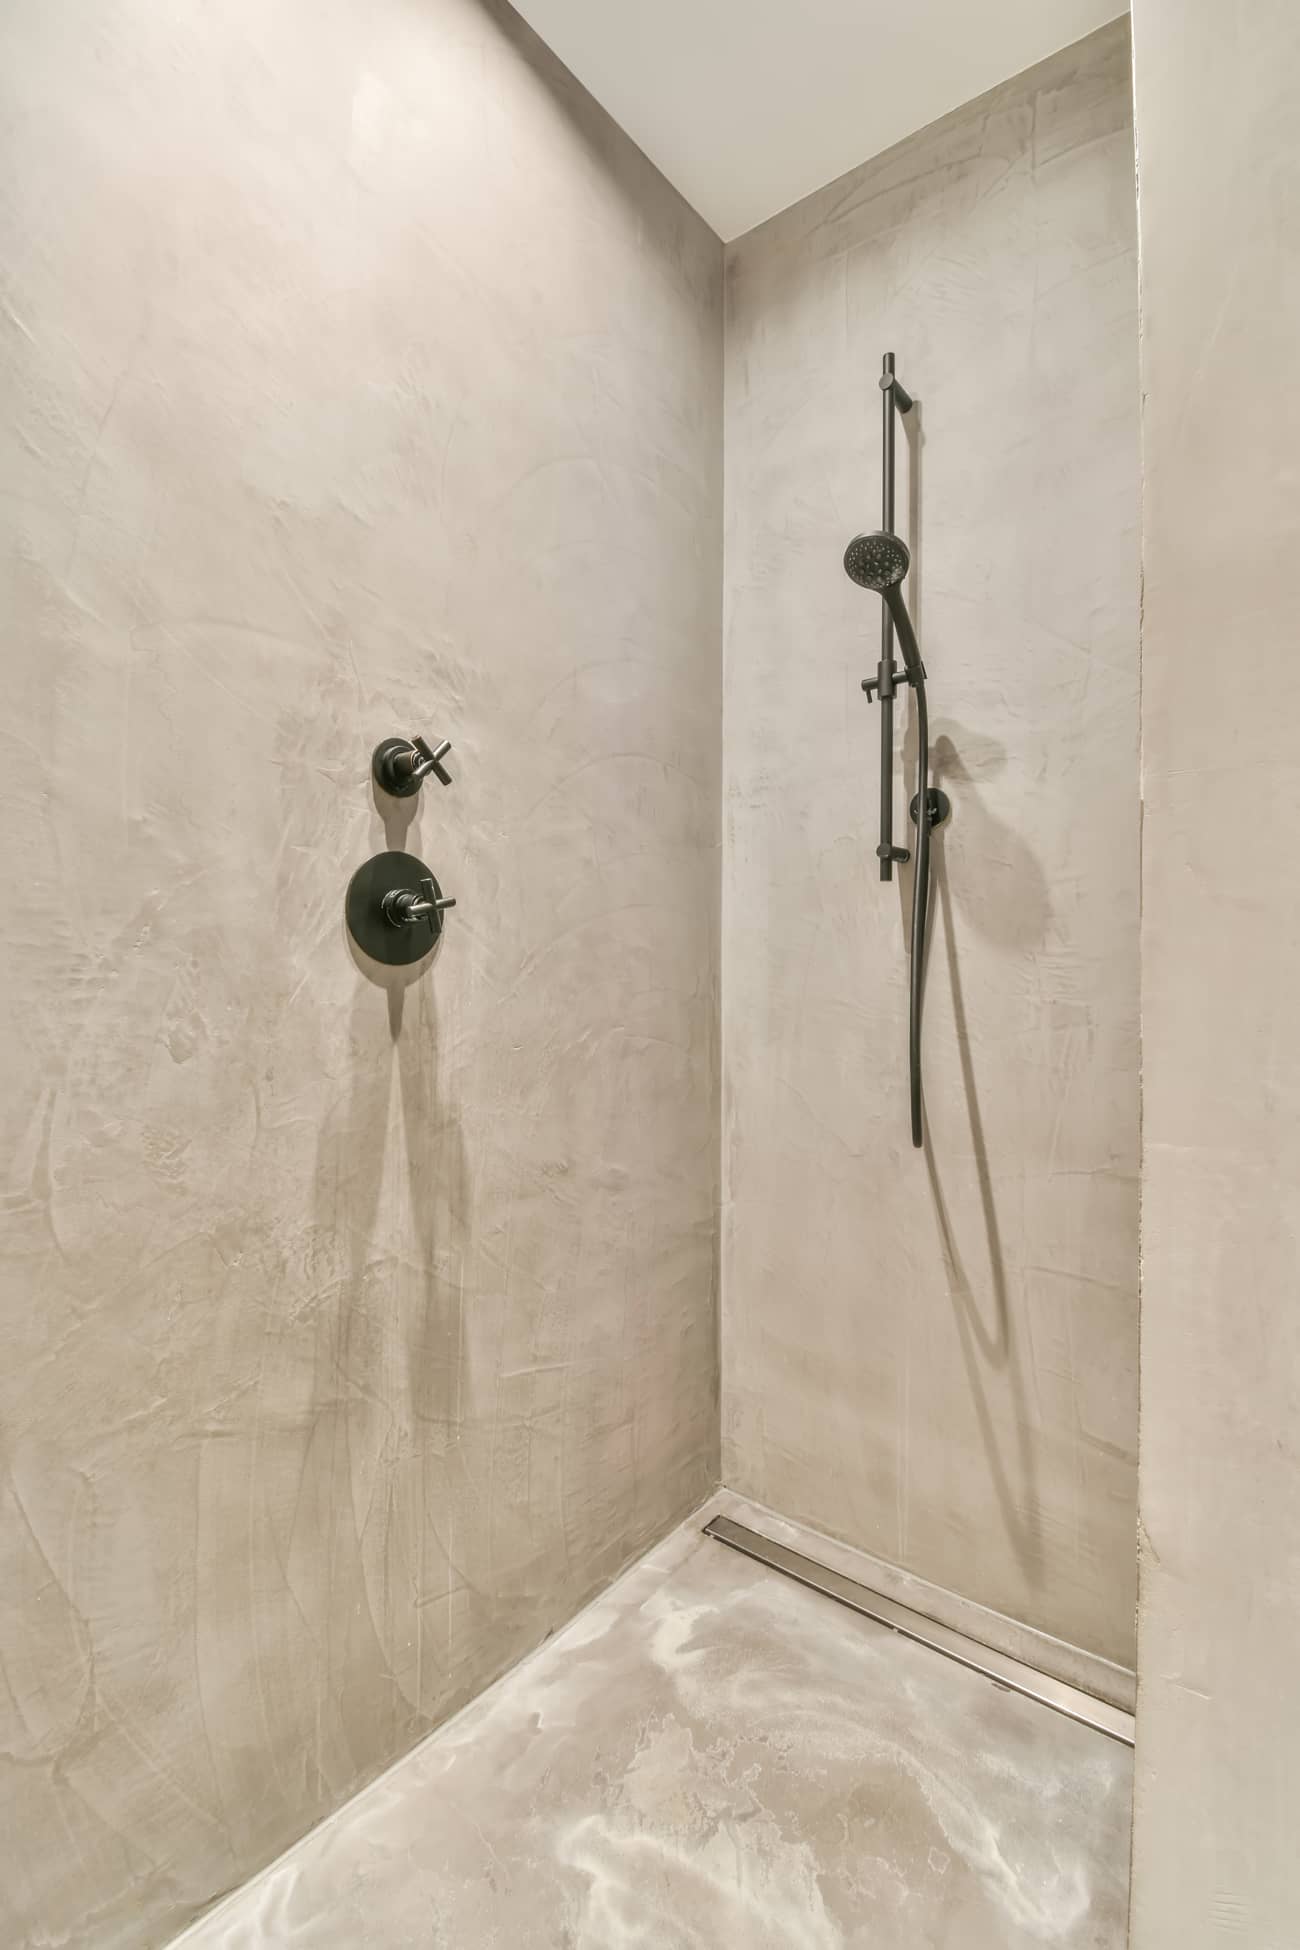  Baño reformado con ducha de microcemento en suelo y paredes